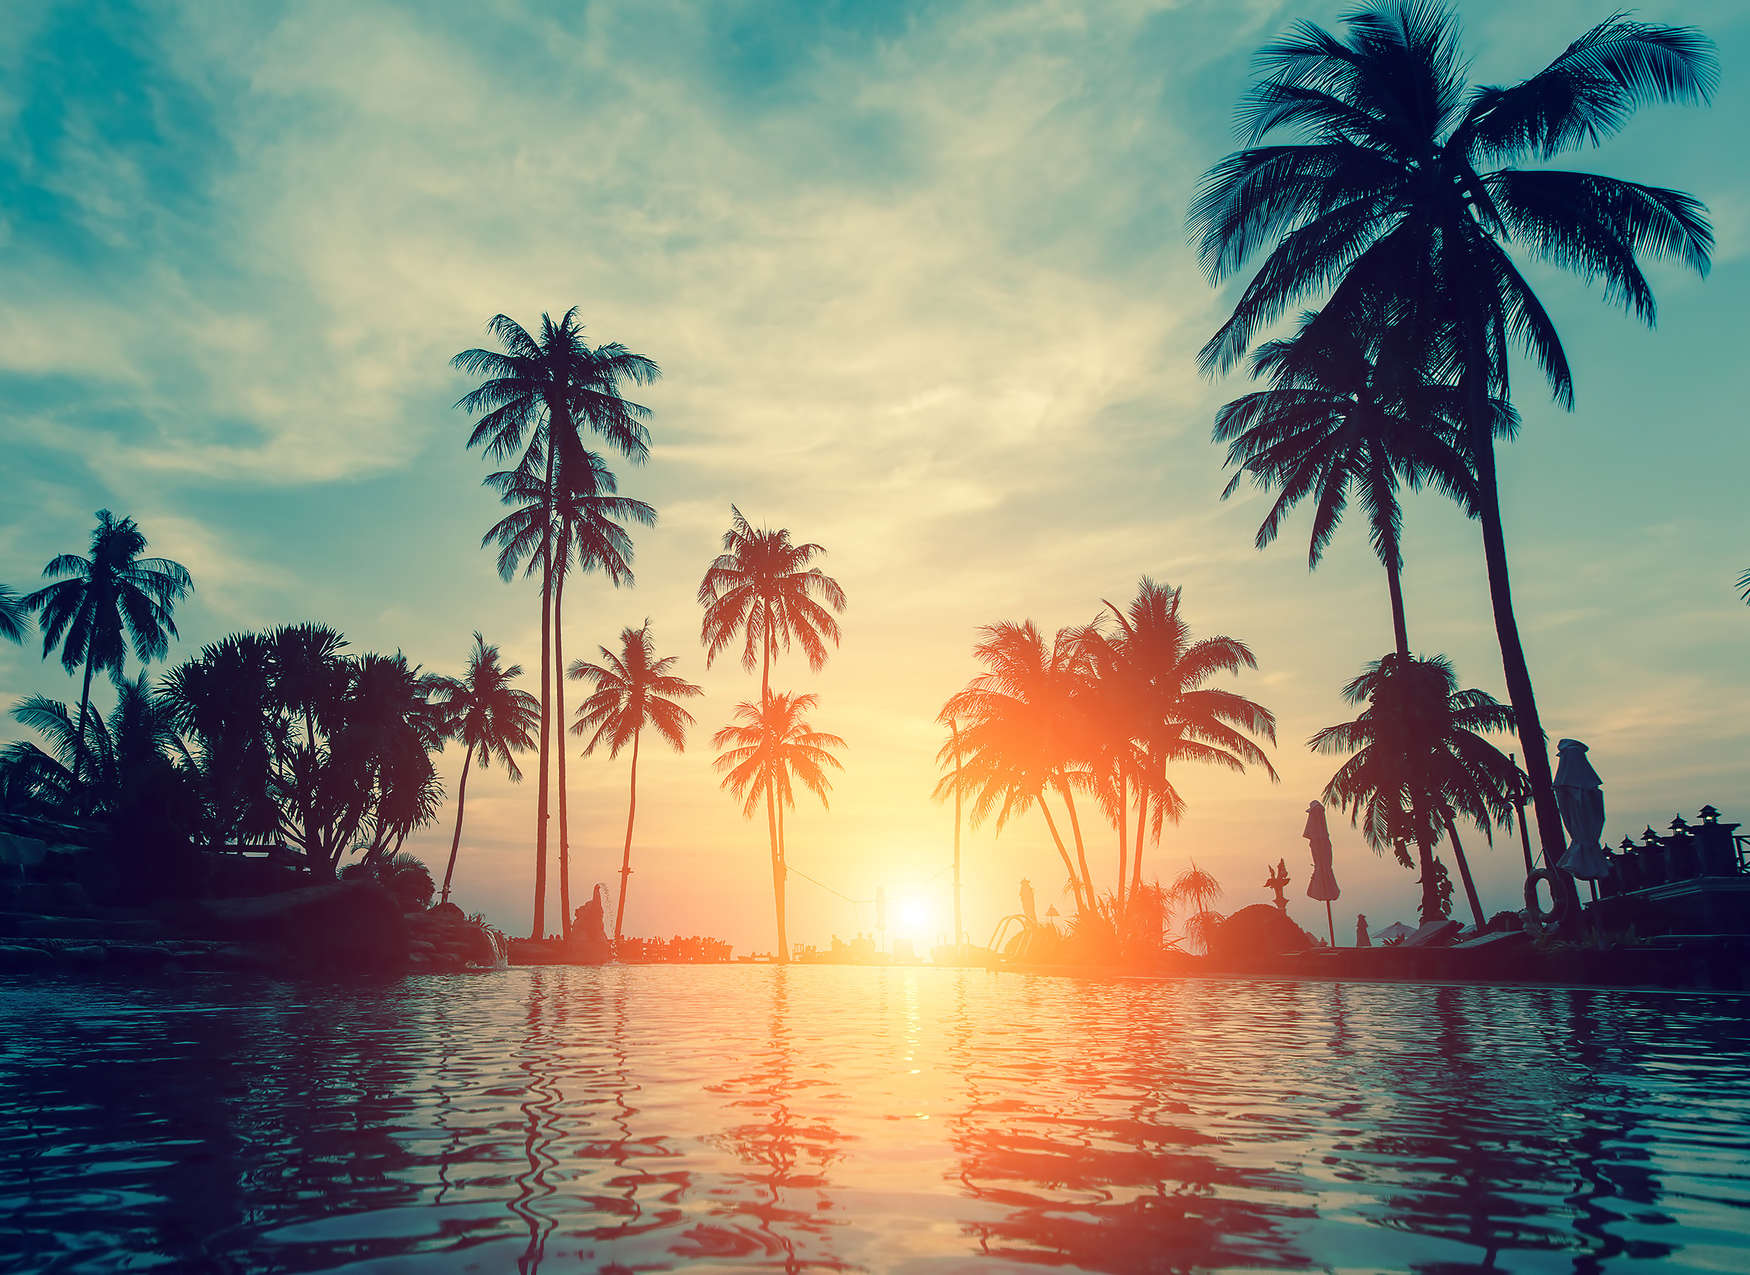             Fotomurali con palme sull'acqua al tramonto - blu, arancione, nero
        